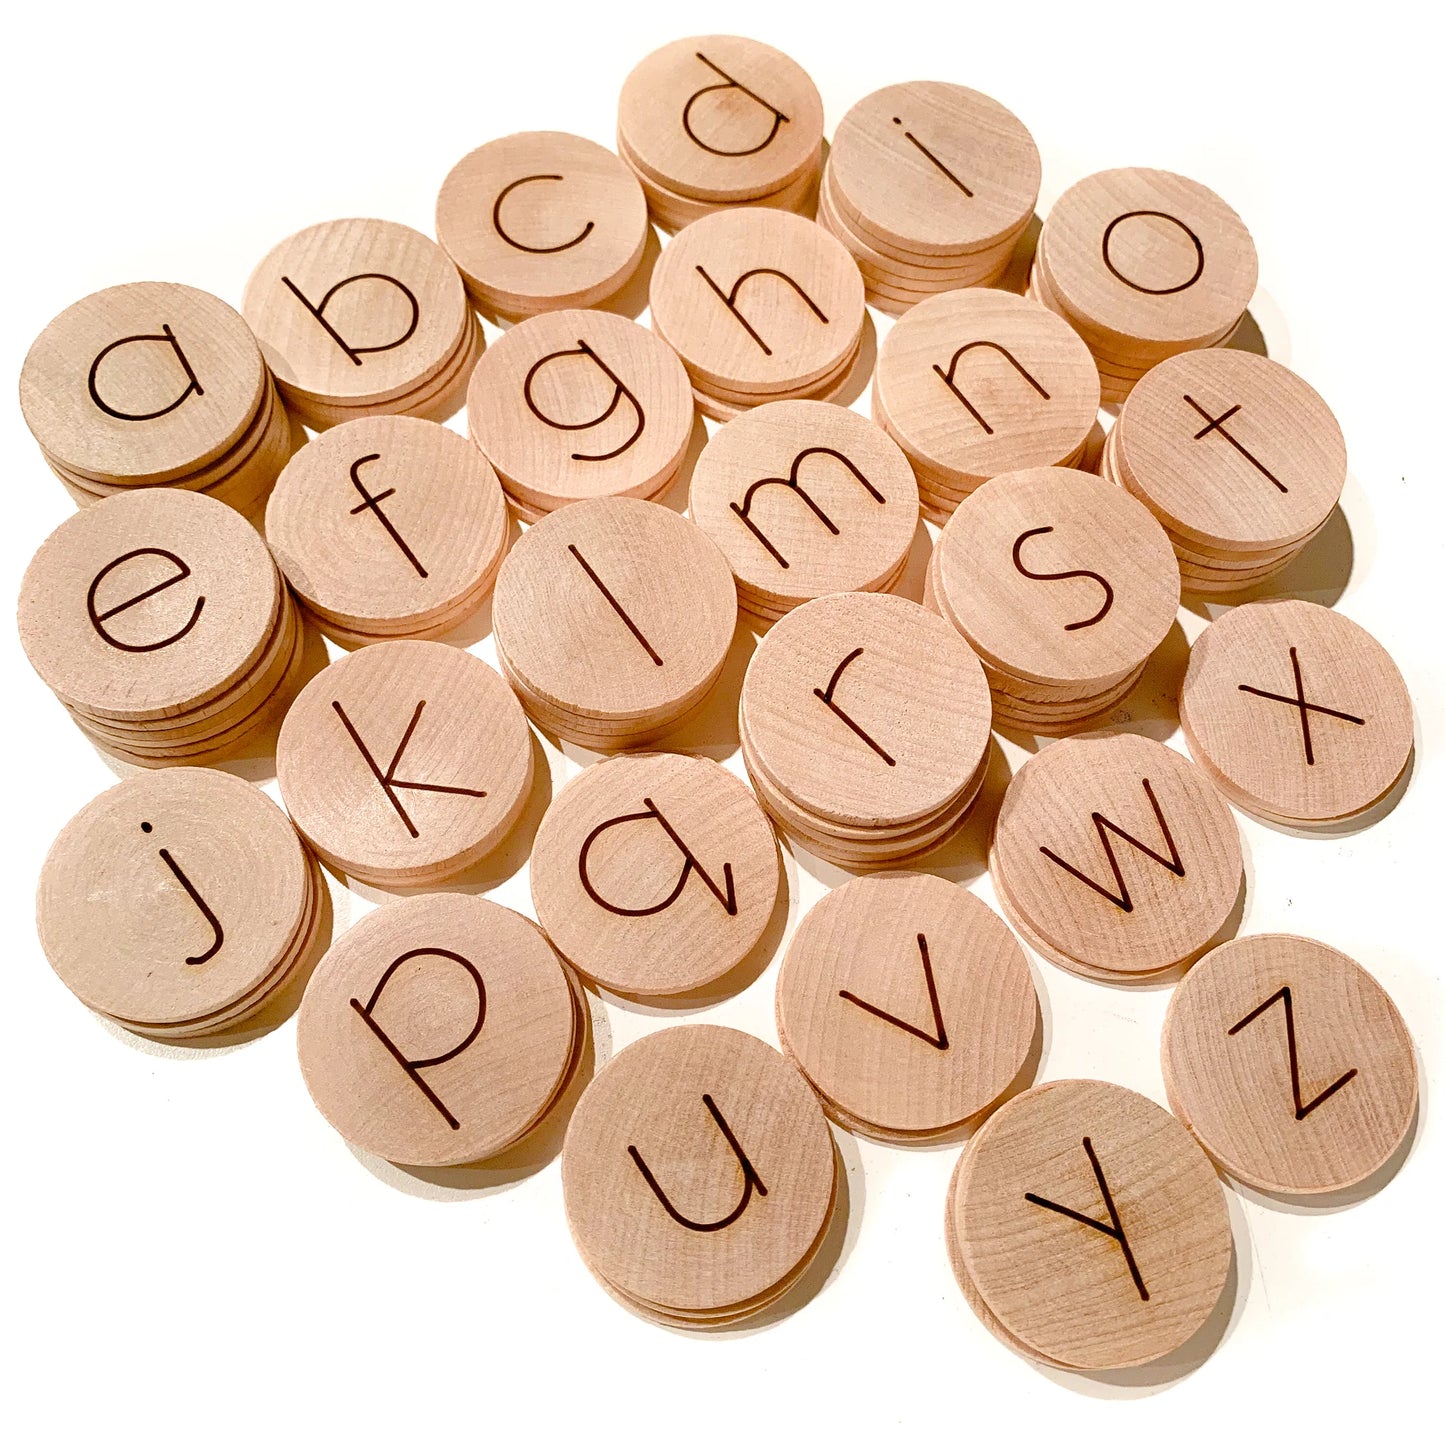 Alphabet Discs (Set of 100) - Standard size 1.5"